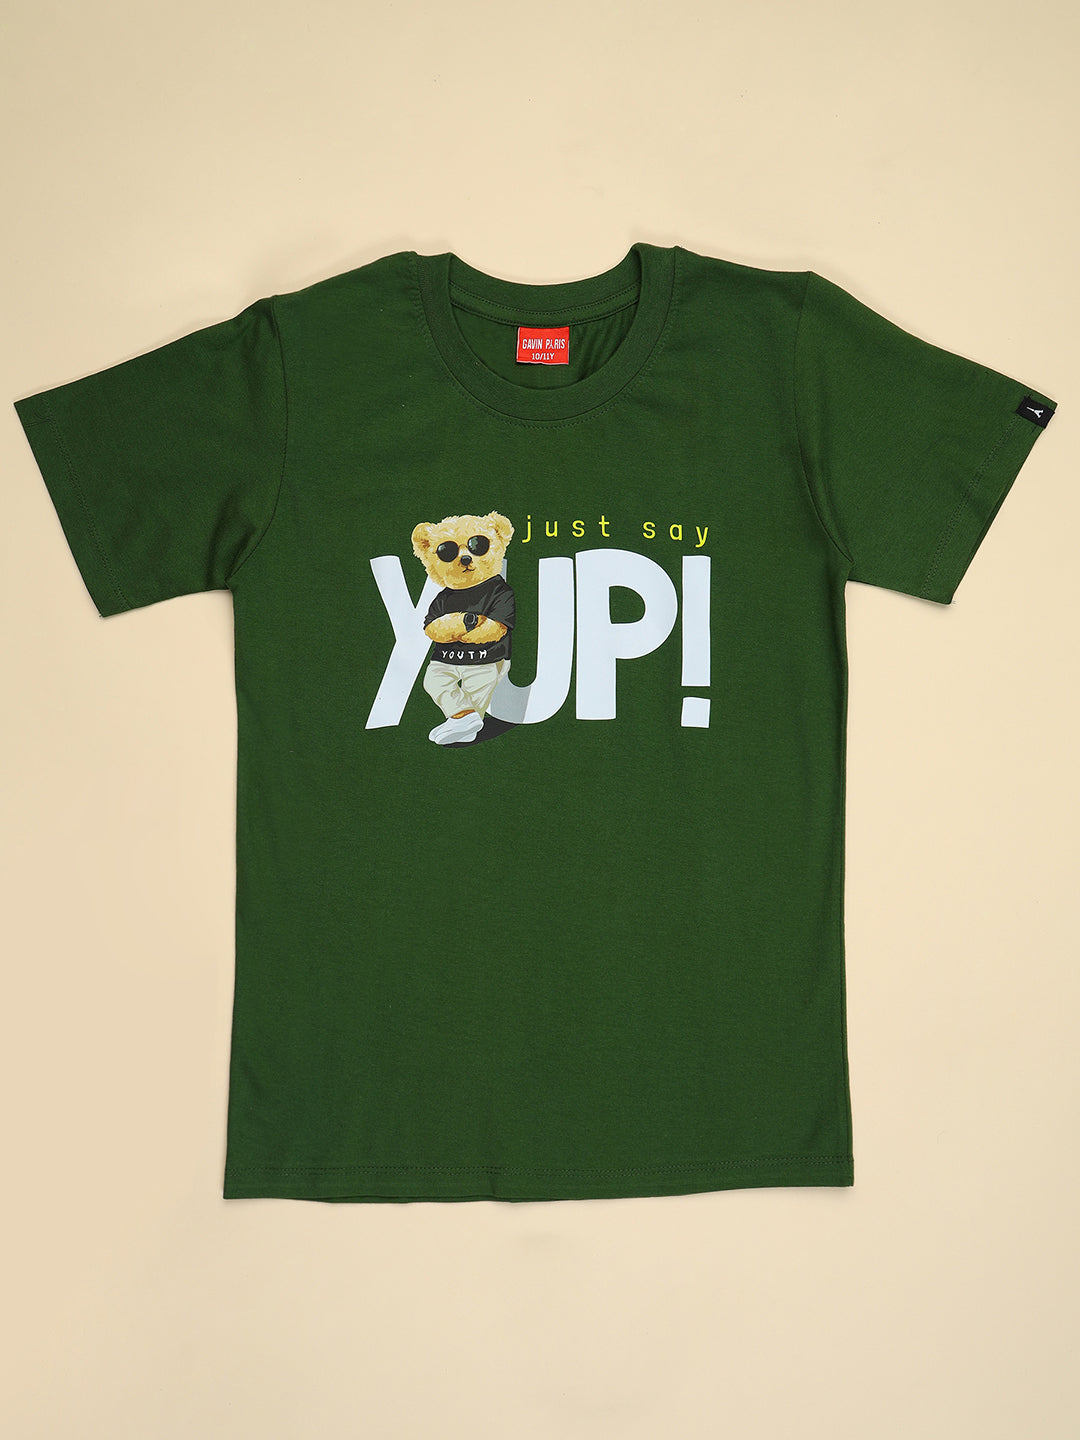 YUP T-shirts for Boys & Girls